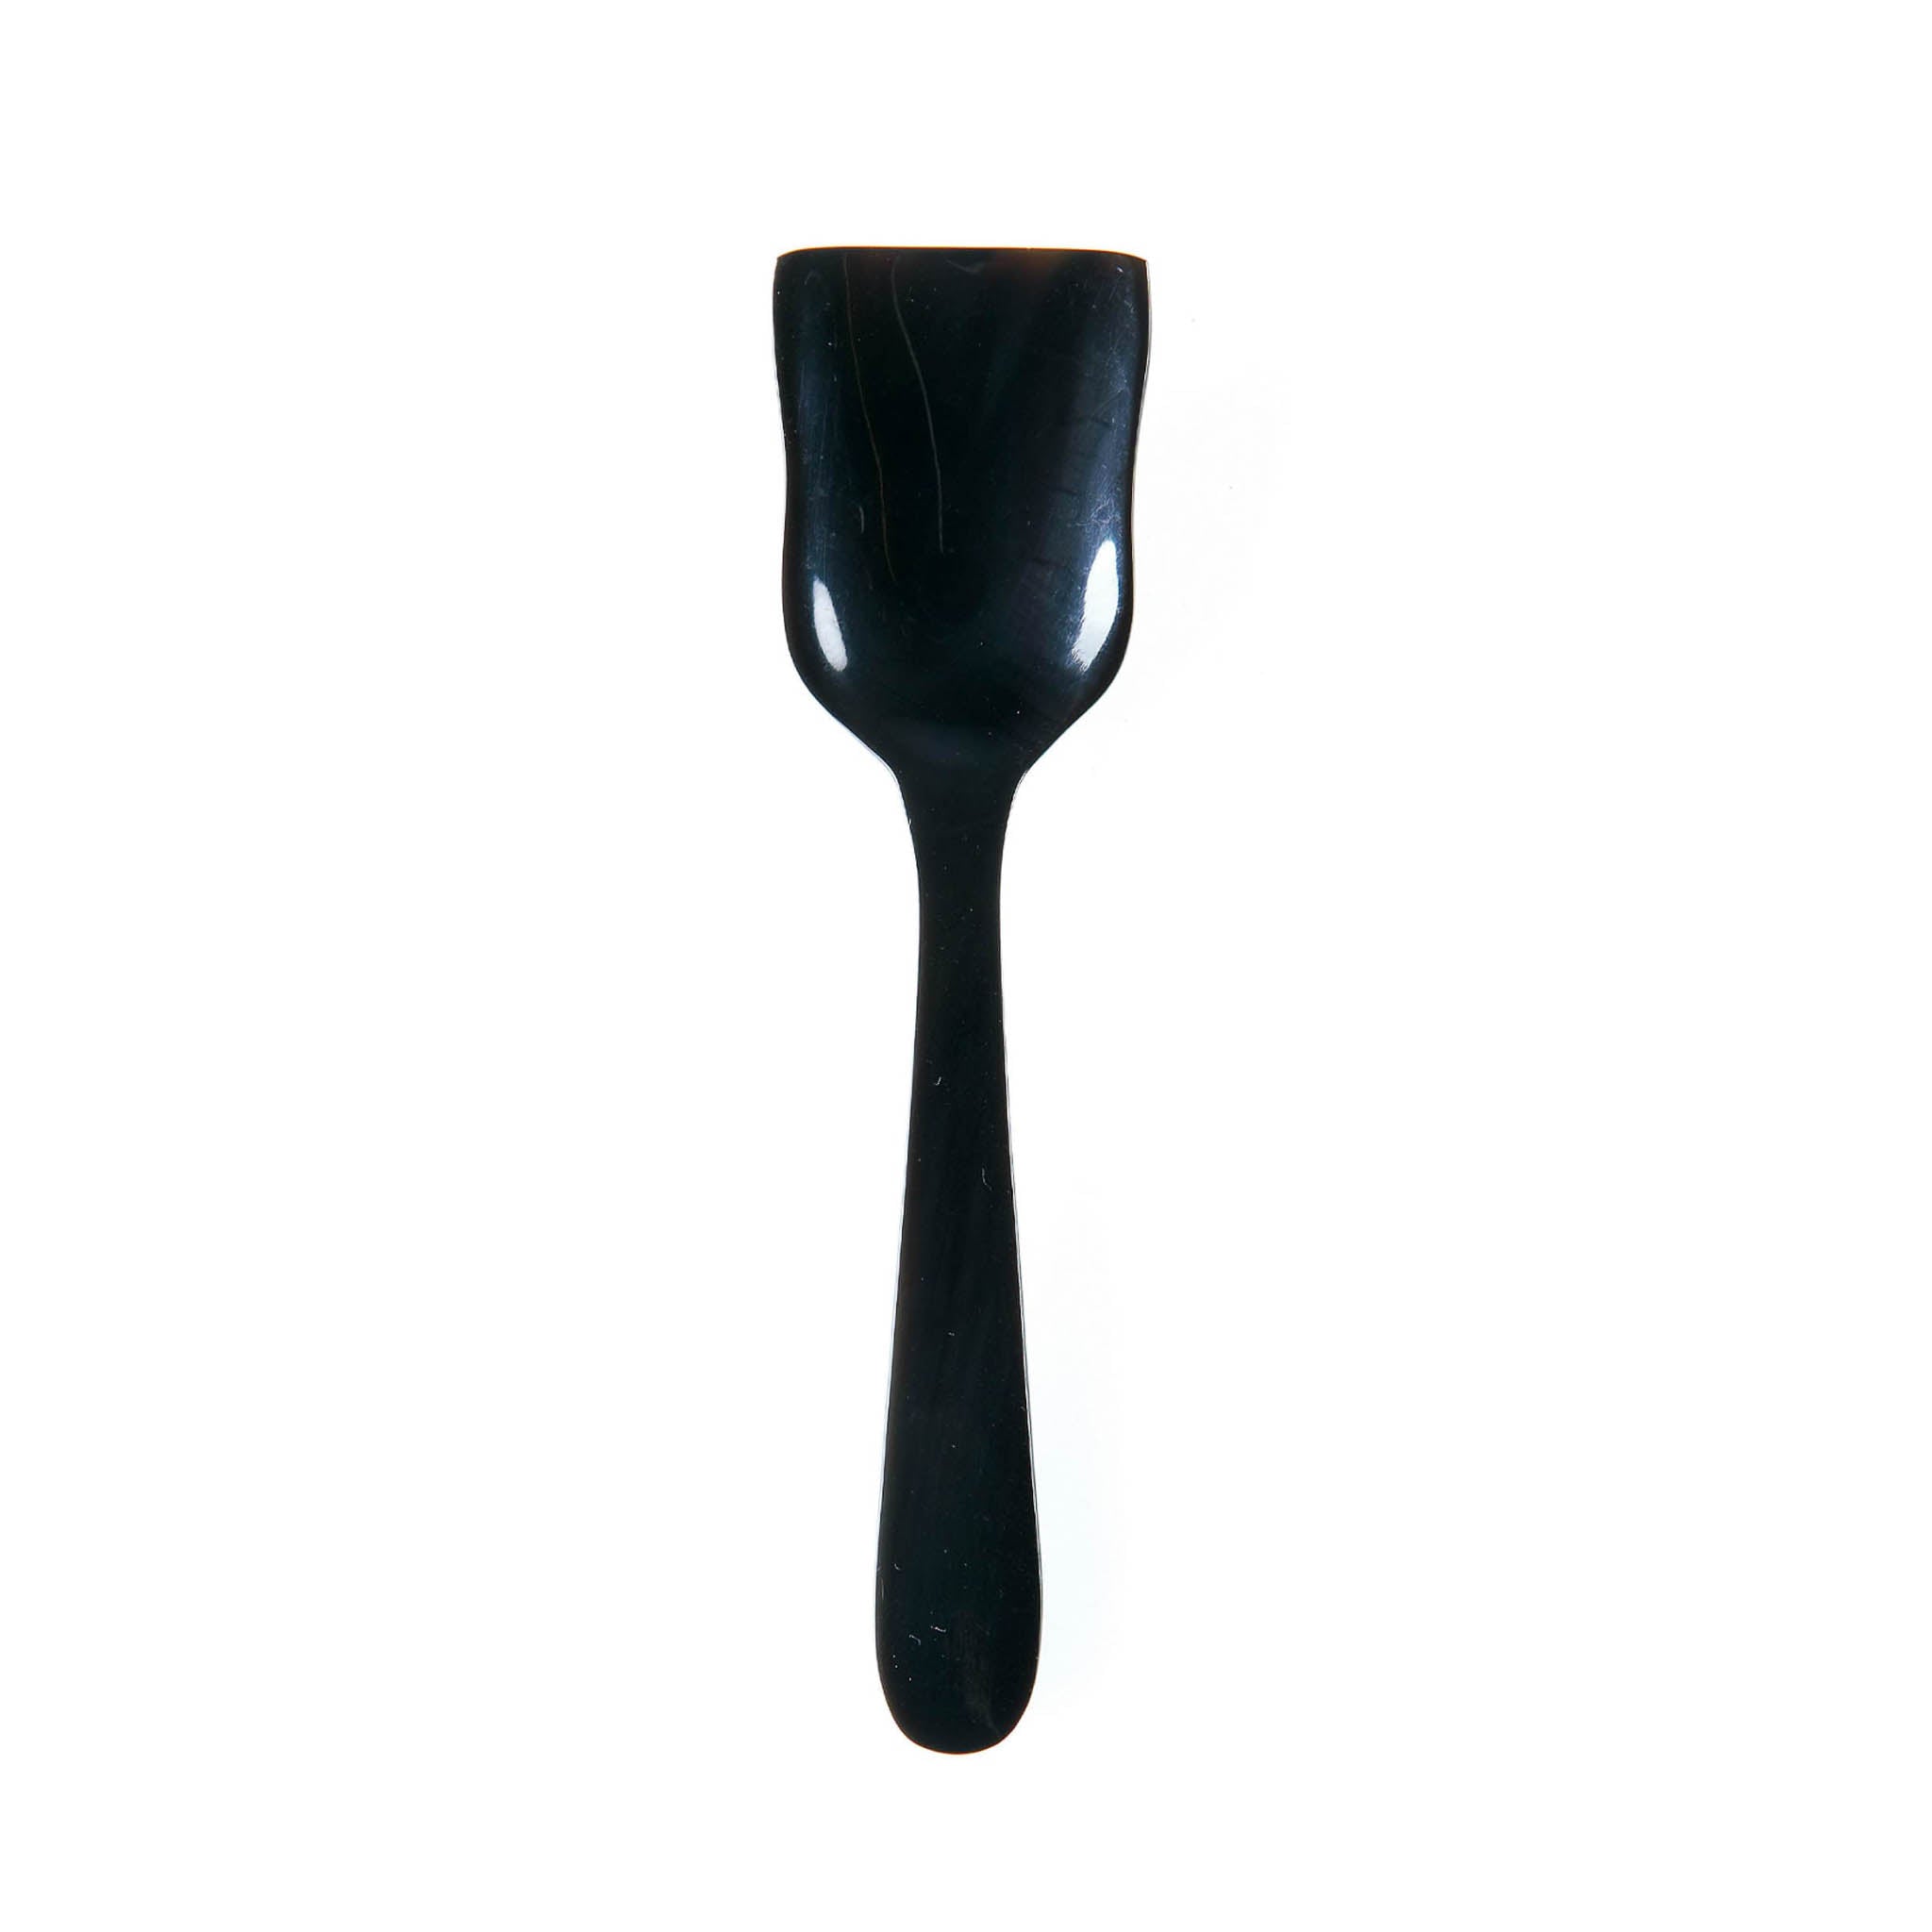 Sarah Petherick Caviar Spoon, Black Horn